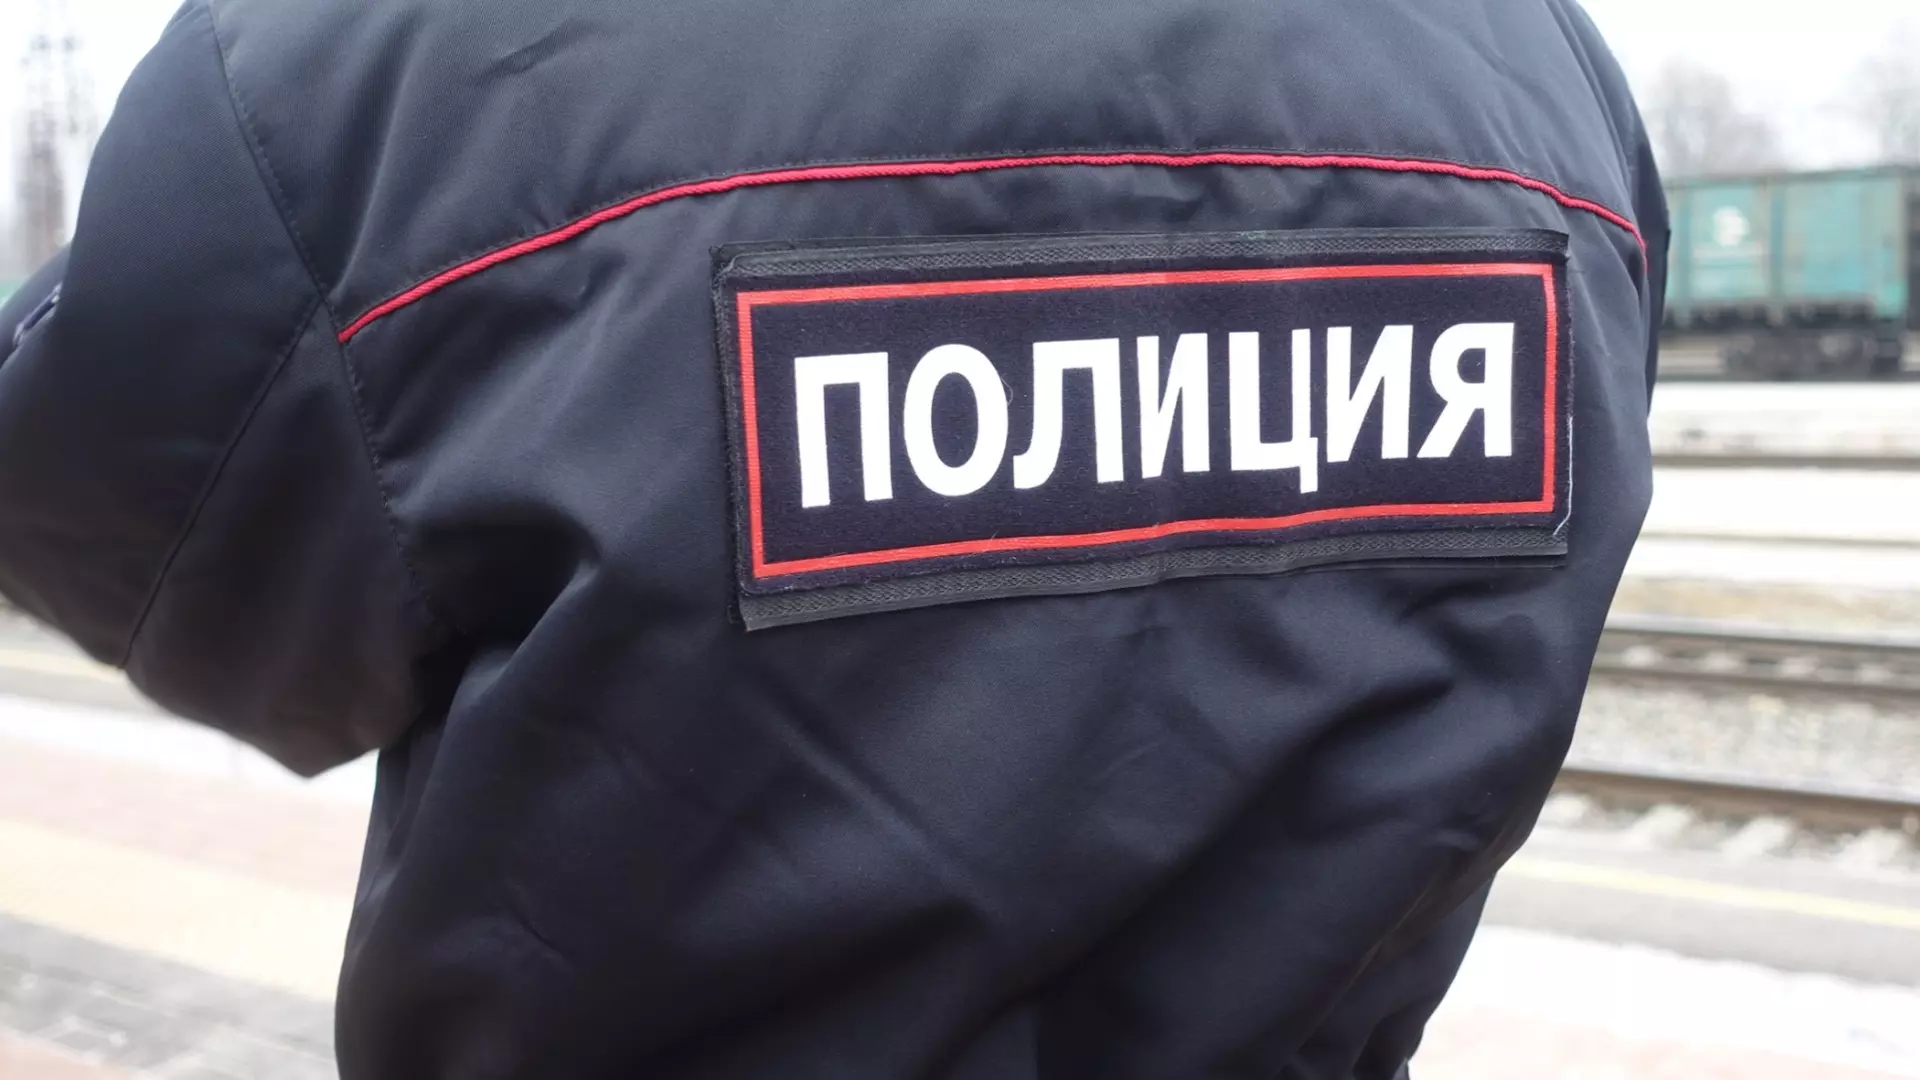 Зарезавший девушку на Мукомольном проезде в Москве признался во втором убийстве